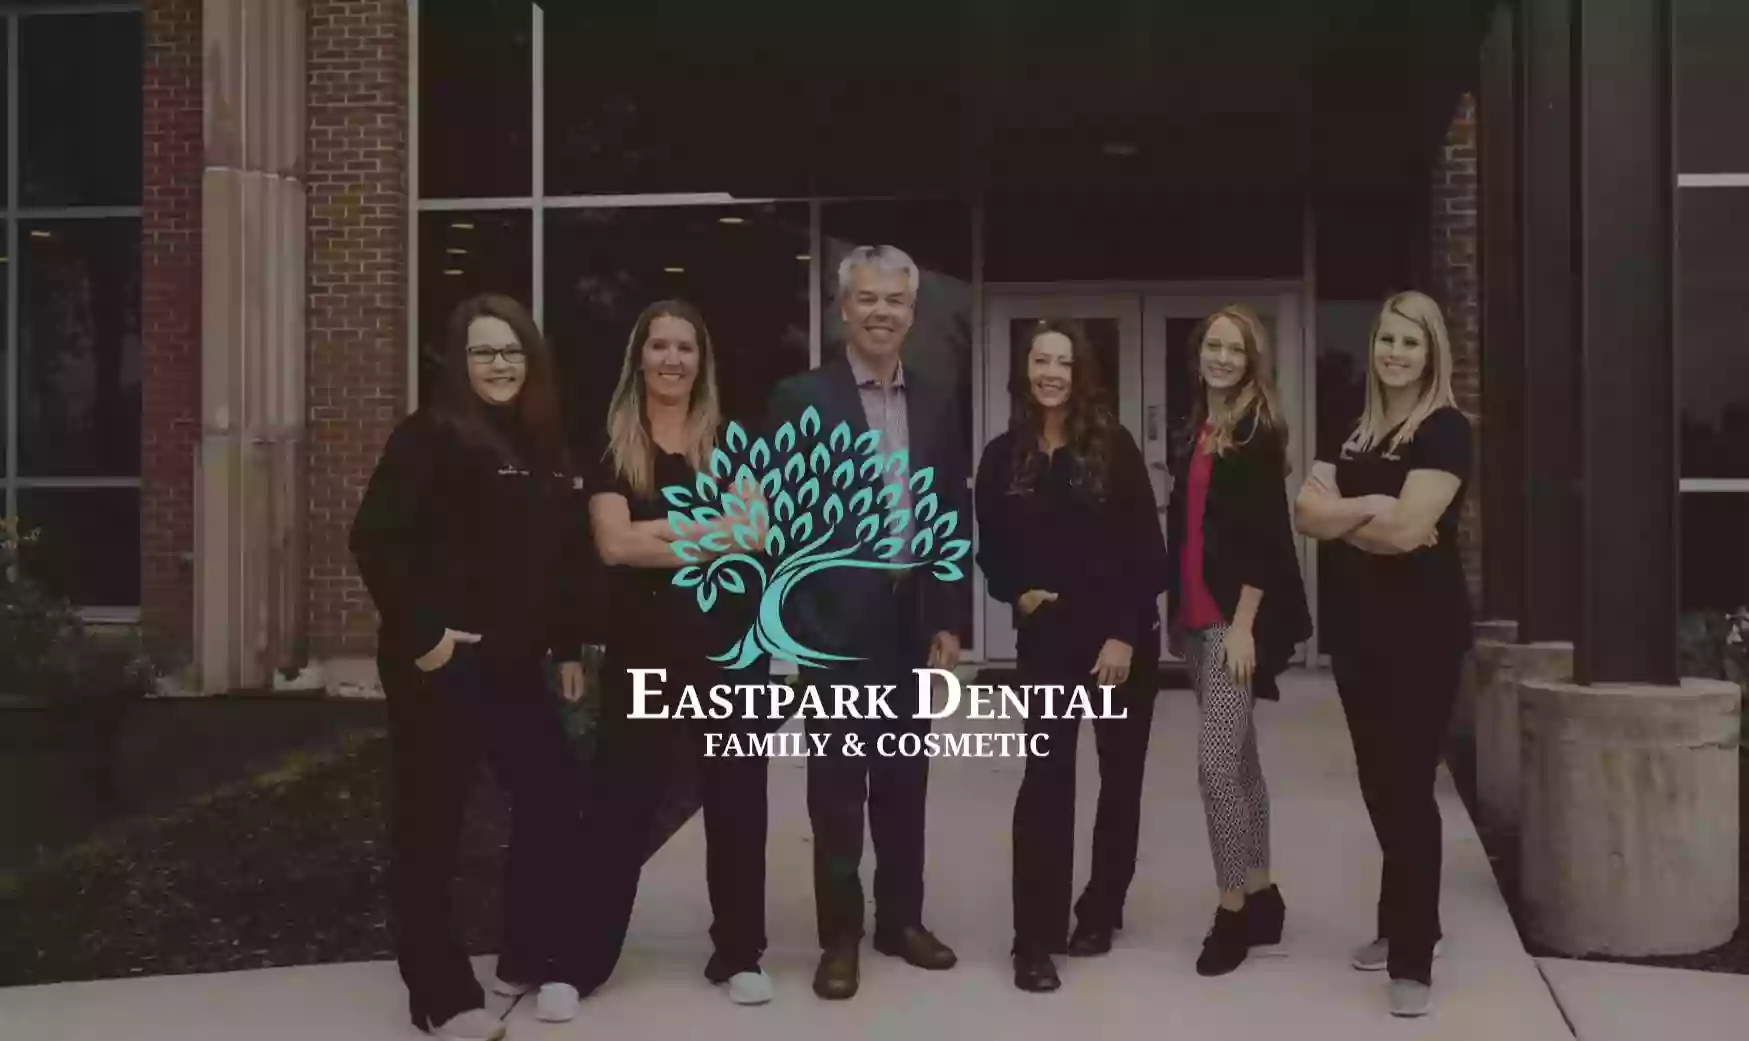 Eastpark Dental